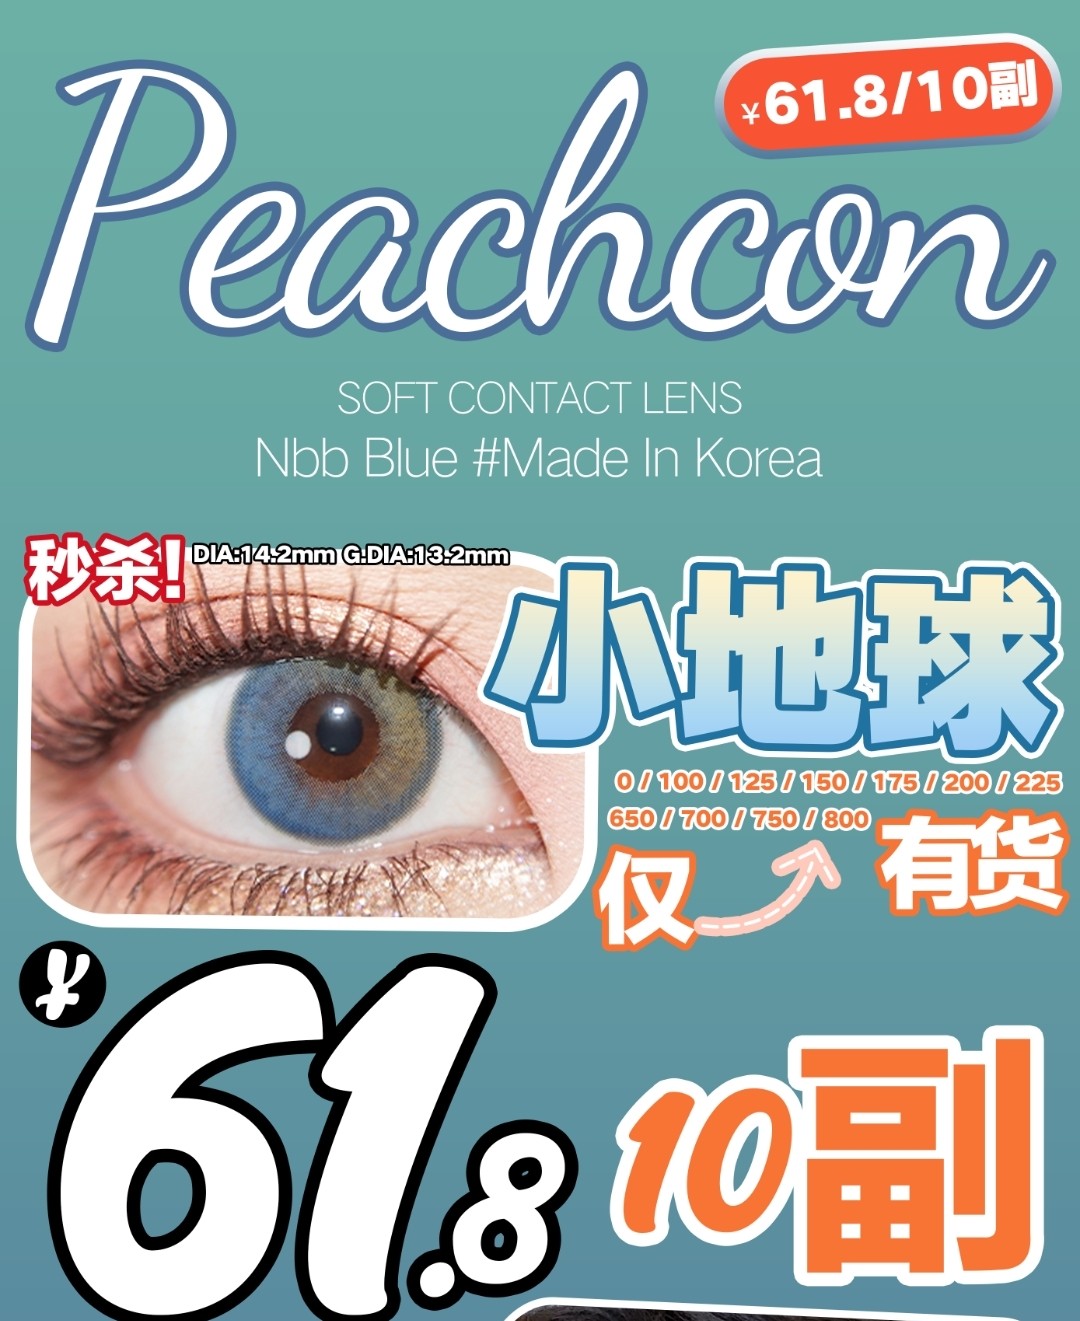 【秒杀】Peachcon美瞳 618小地球专属活动